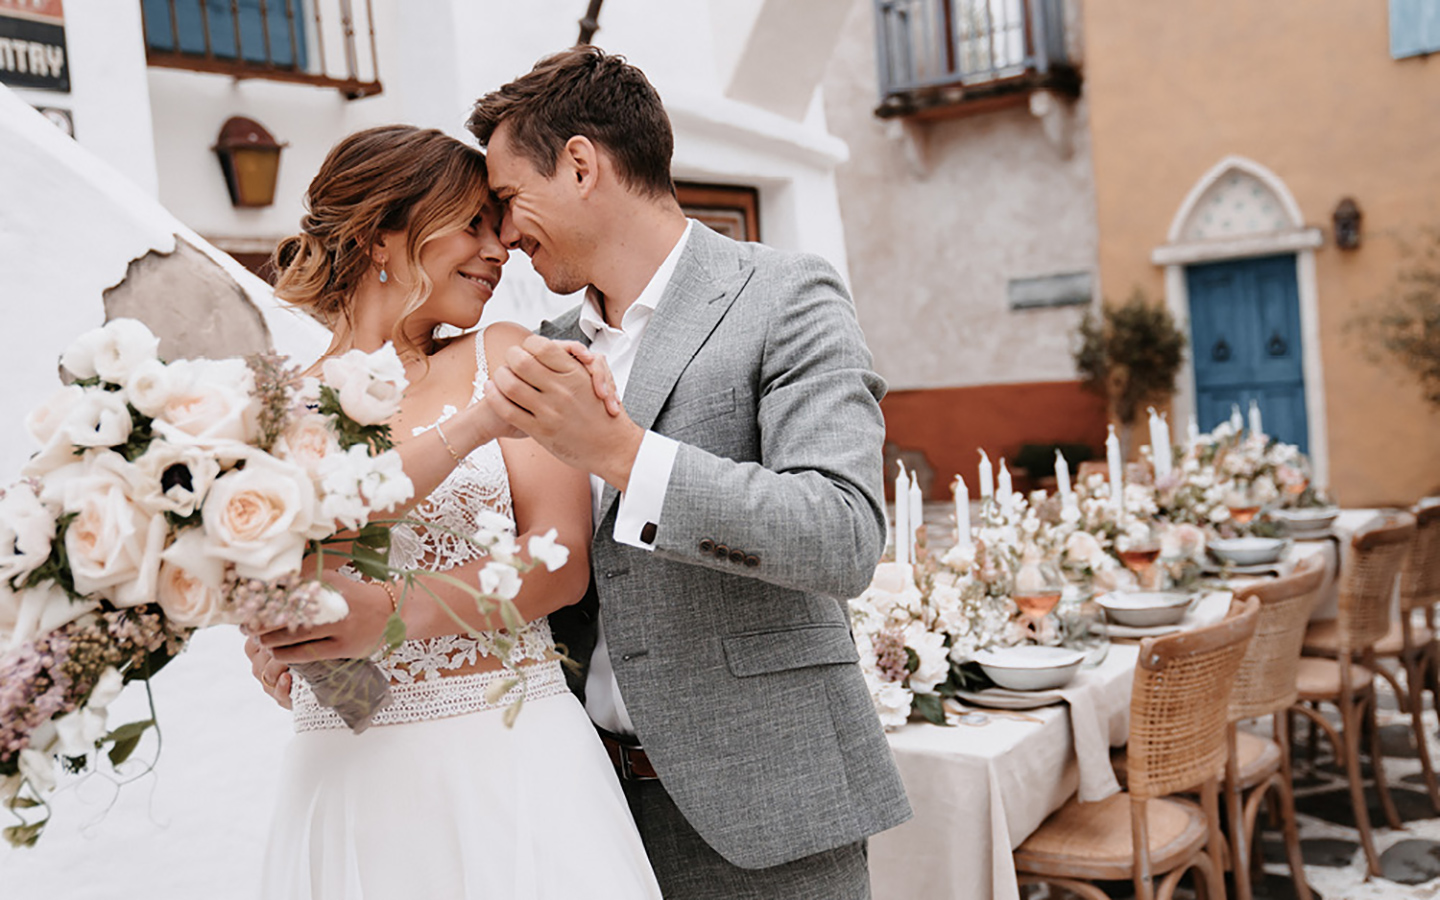 Braut und Bräutigam sehen sich tief in die Augen und strahlen über das ganze Gesicht. Der Blumenstrauß der Braut in hellen Tönen wird von ihr in der Hand gehalten. Im Hintergrund ist der Hochzeitstisch zur mediterranen Hochzeit zu sehen.